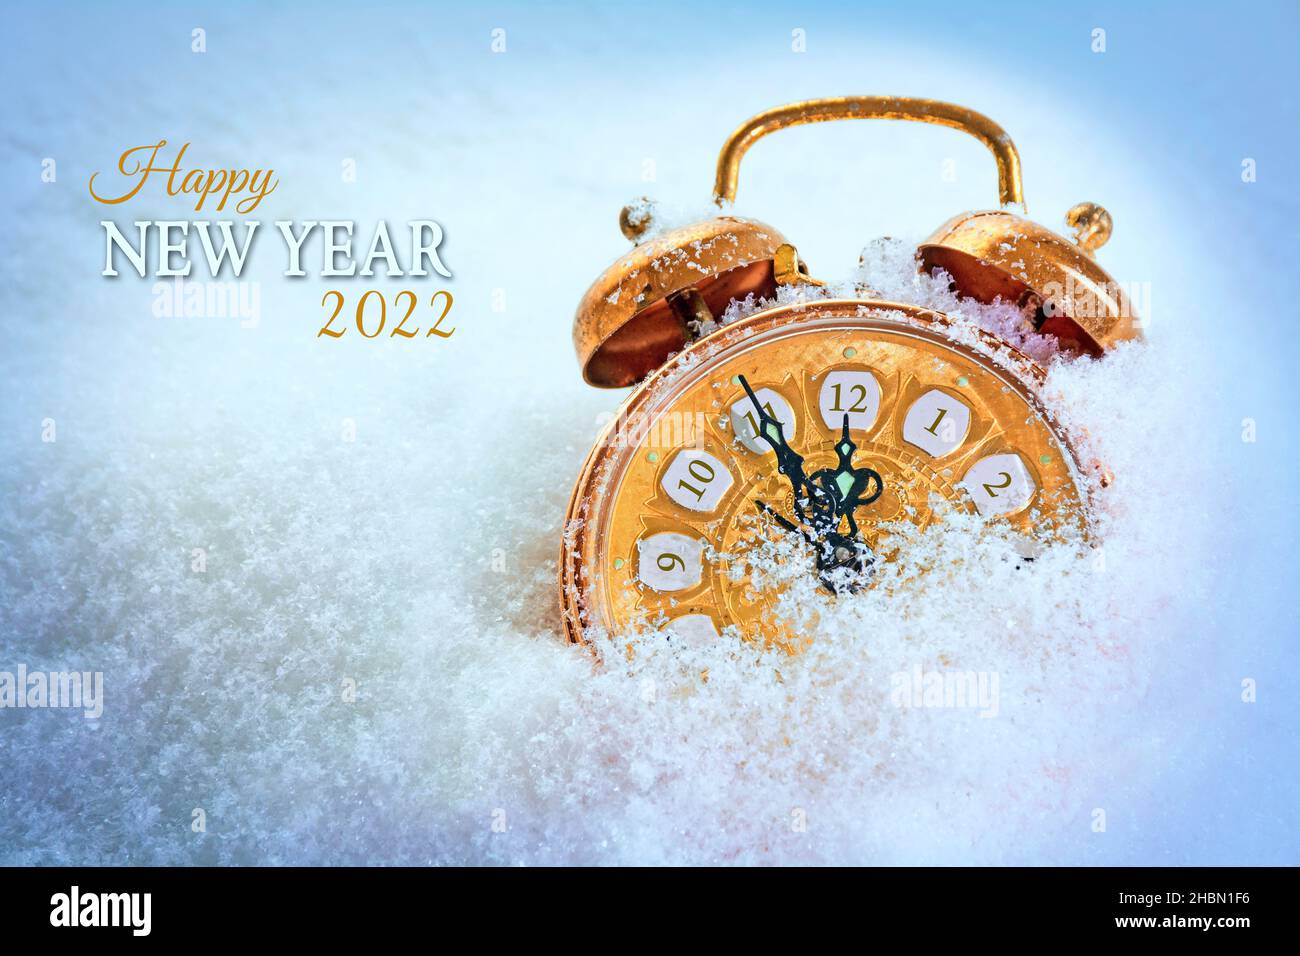 Kupferfarbener Vintage-Wecker im Schnee, der fünf Minuten vor zwölf zeigt, Text Frohes Neues Jahr 2022, saisonale Grußkarte mit Kopierfläche Stockfoto